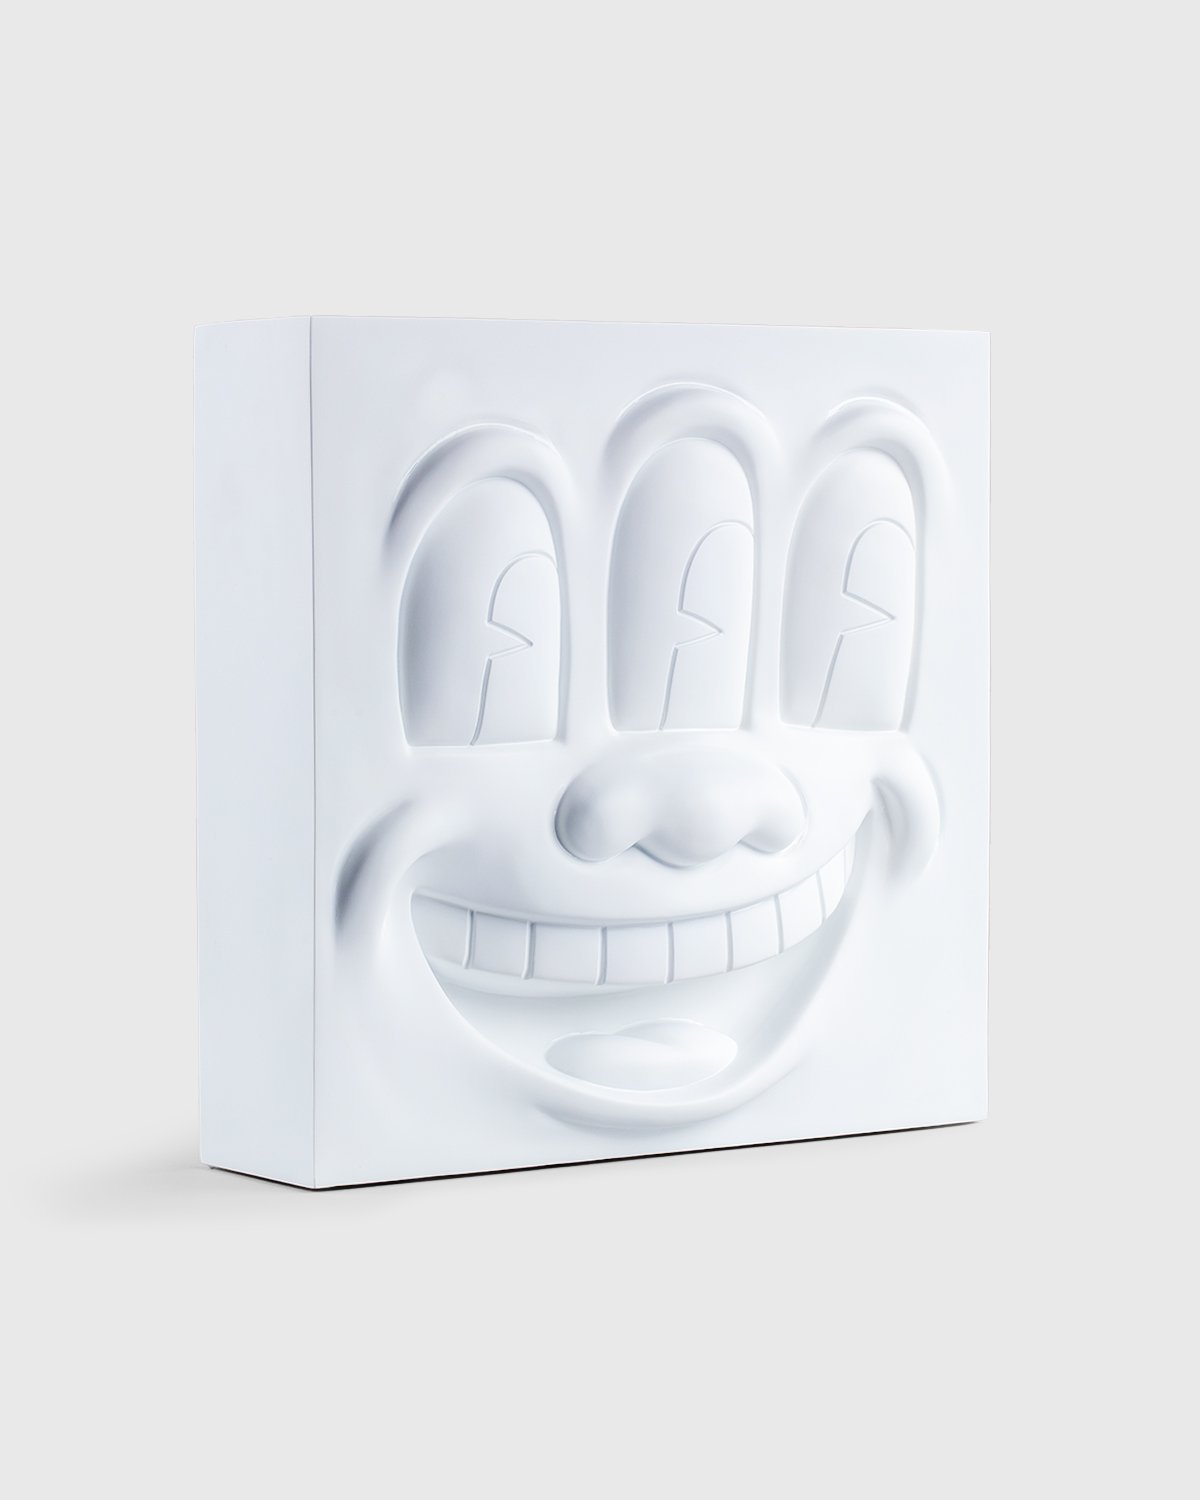 Medicom - Keith Haring Three Eyed Smiling Face Statue White - Lifestyle - White - Image 2